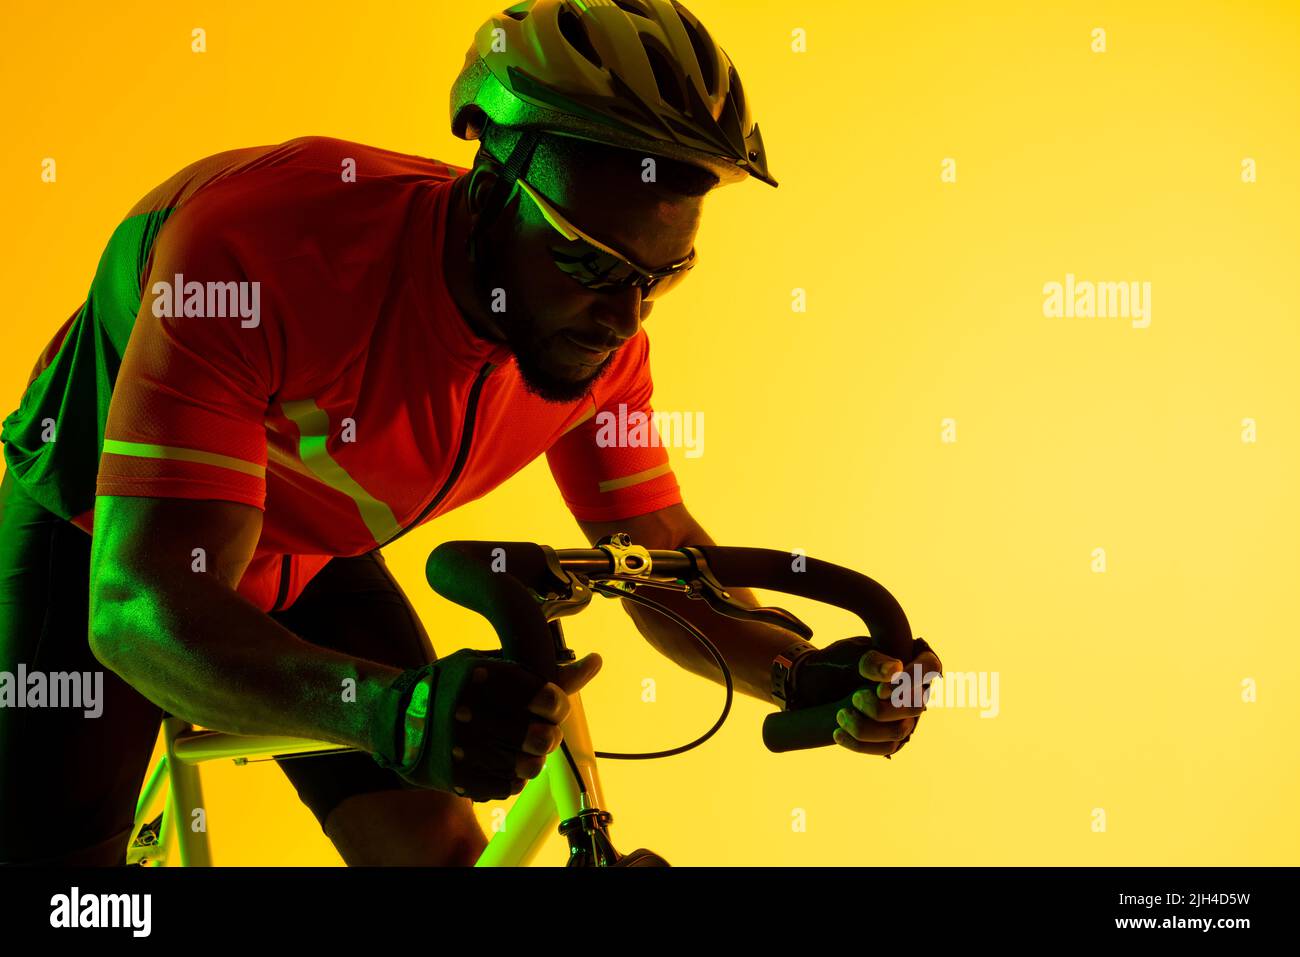 Immagine di ciclista maschile afroamericana in bicicletta con illuminazione gialla Foto Stock